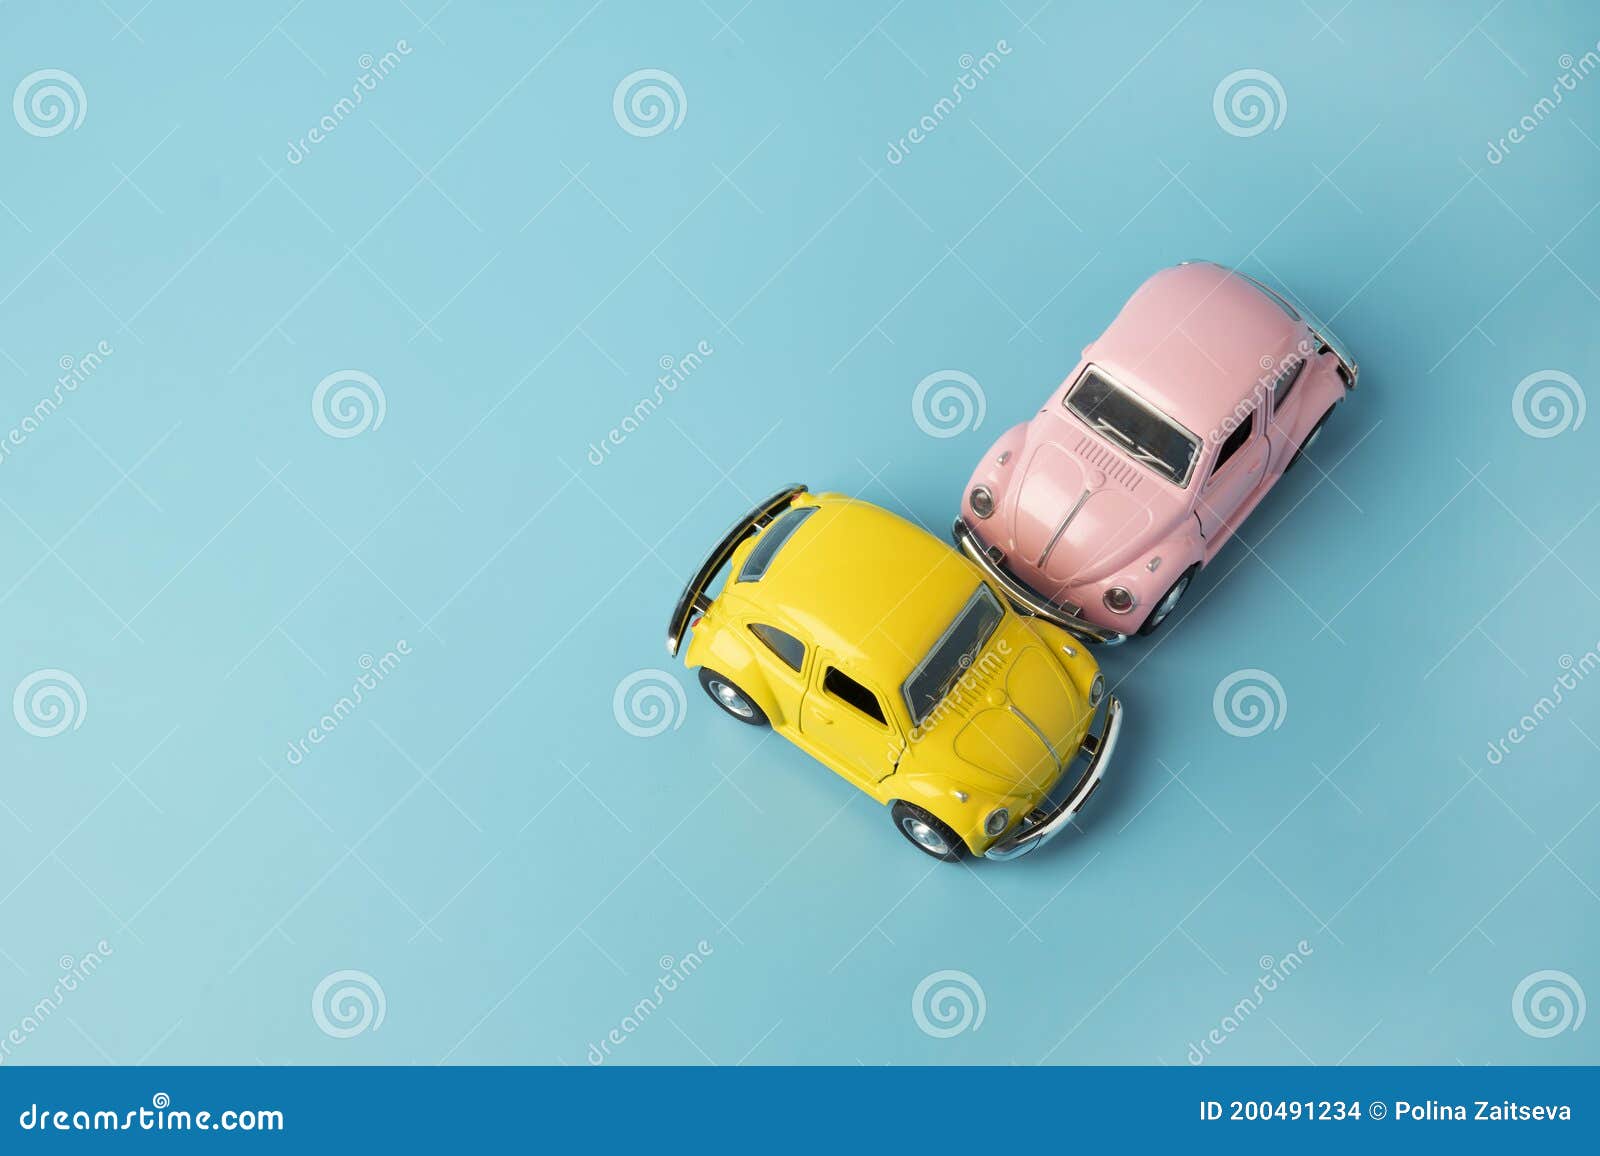 7+ Thousand Cartoon Car Crash Royalty-Free Images, Stock Photos & Pictures